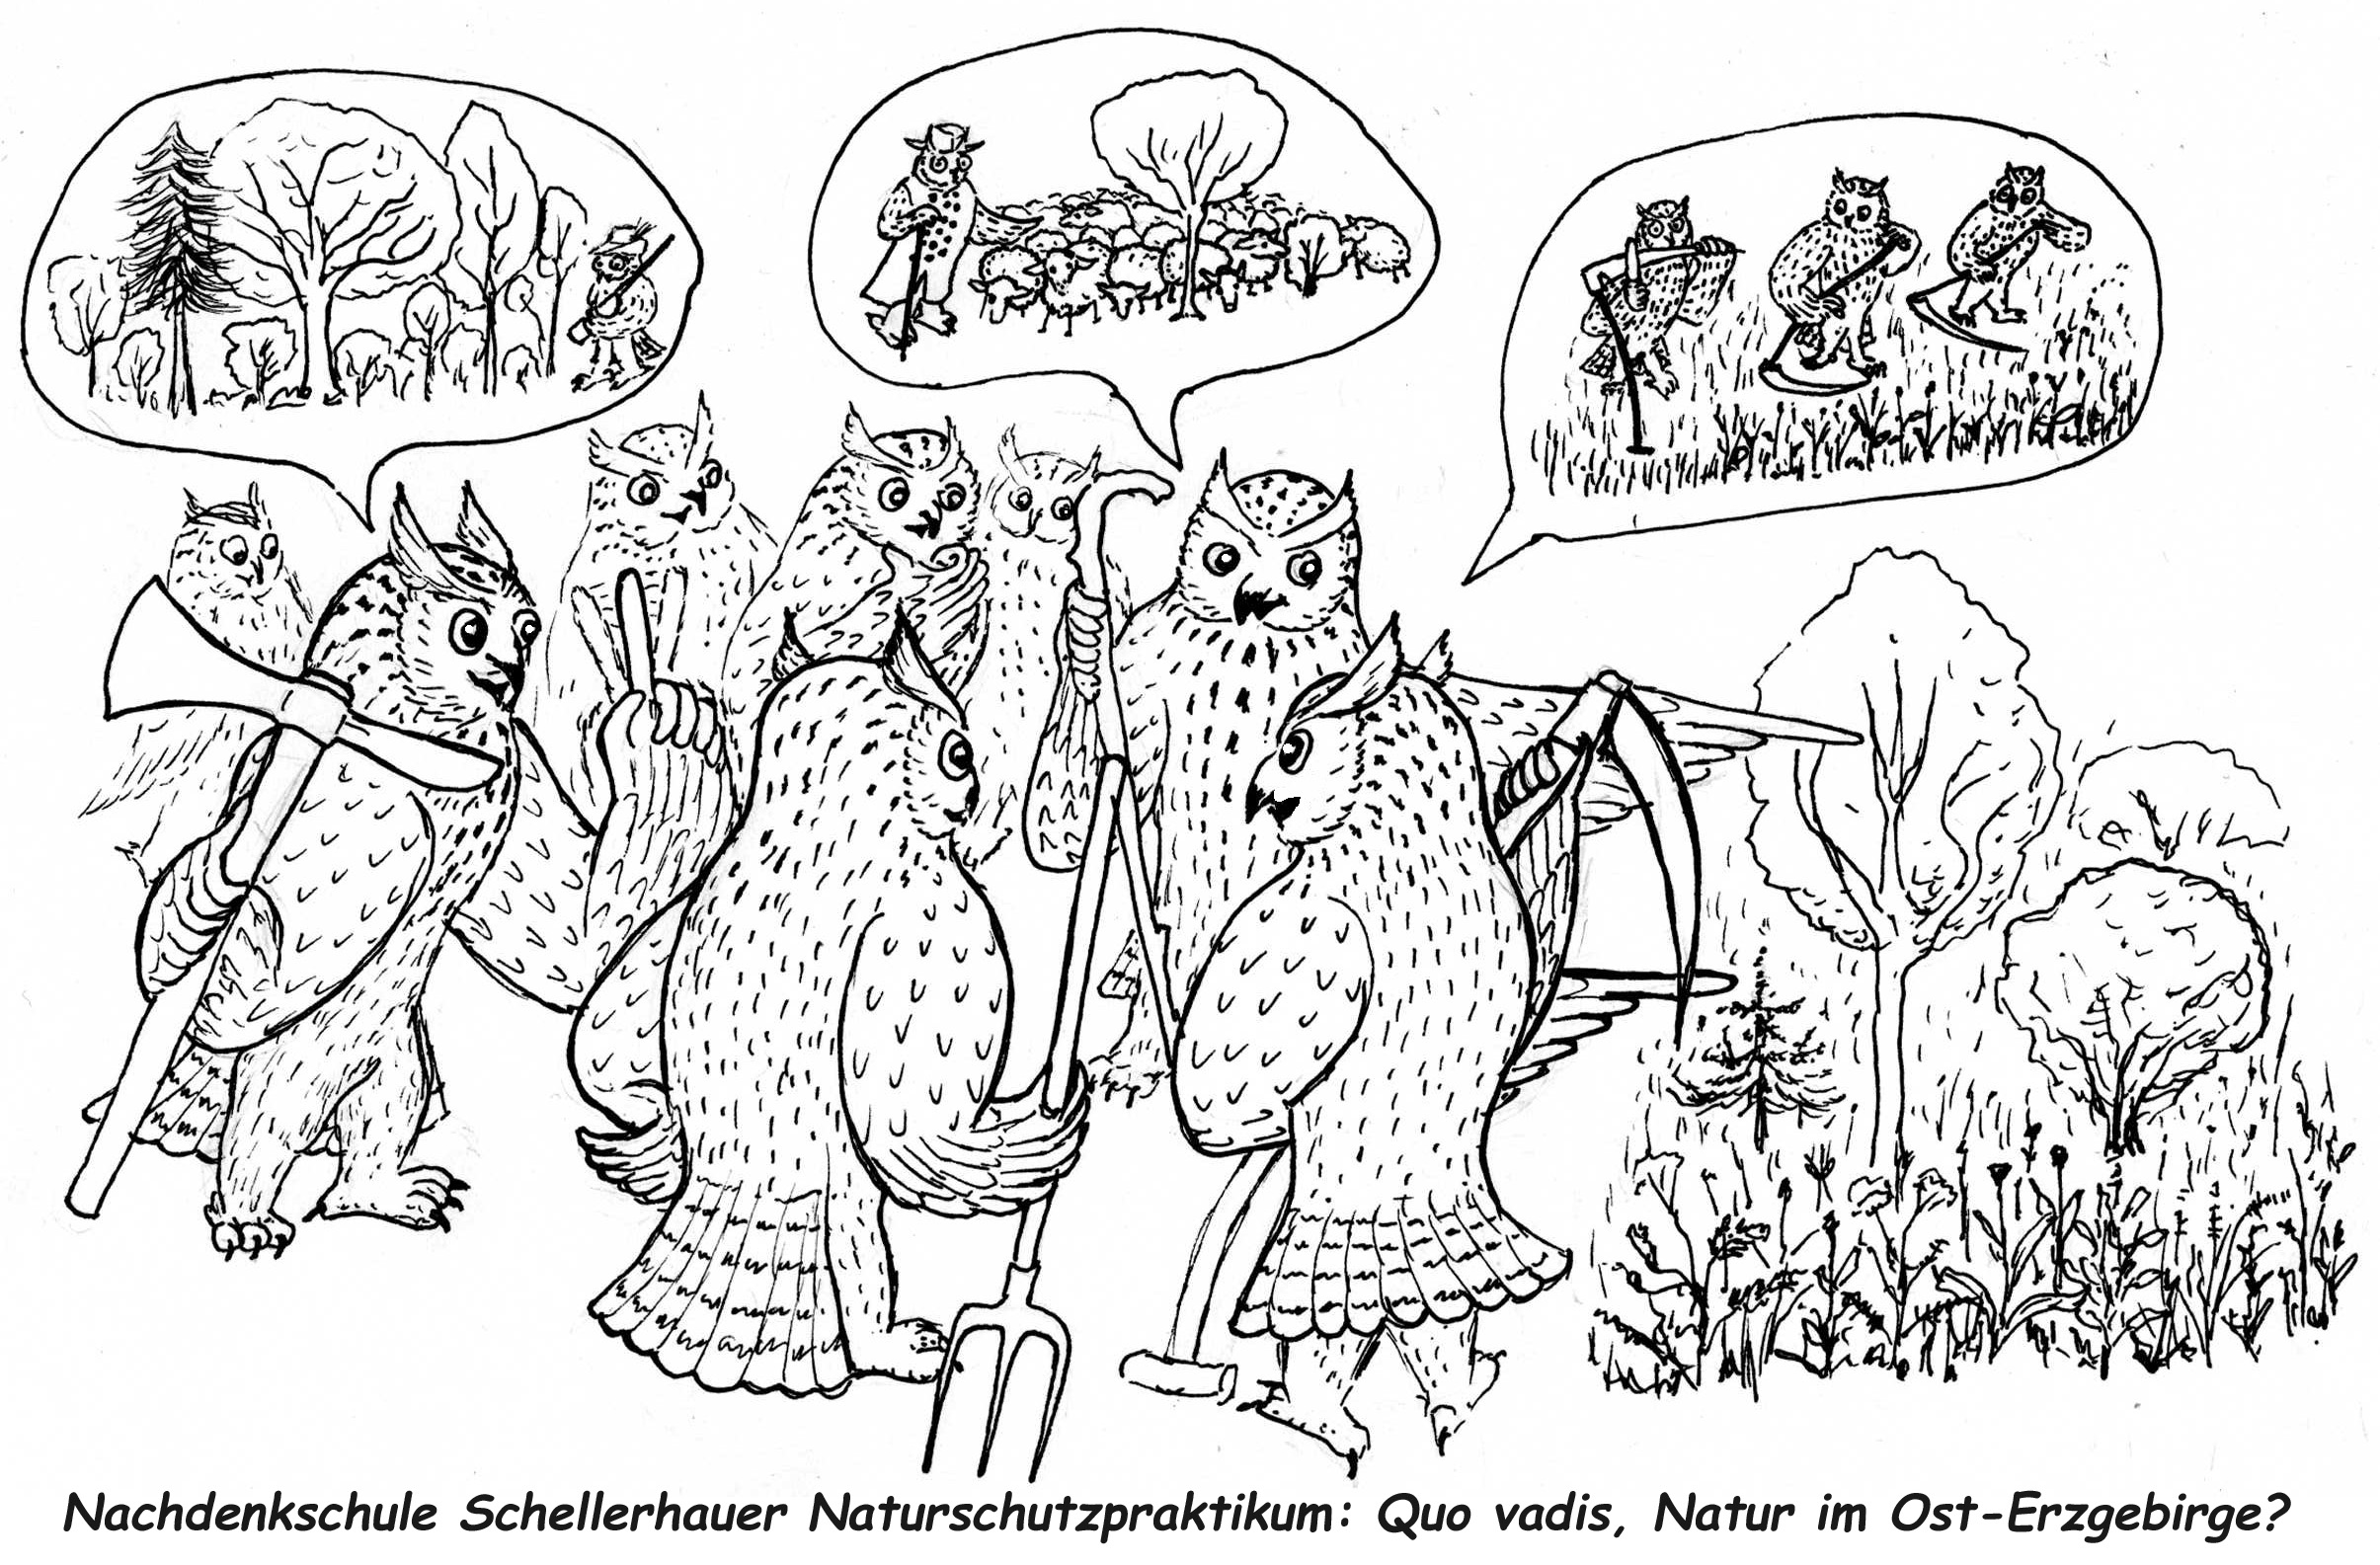 Schellerhauer Naturschutzpraktikum 6. bis 13. August und Zusatzpraktikum “Internationales Praxisseminar Naturschutz” 20. bis 26. August